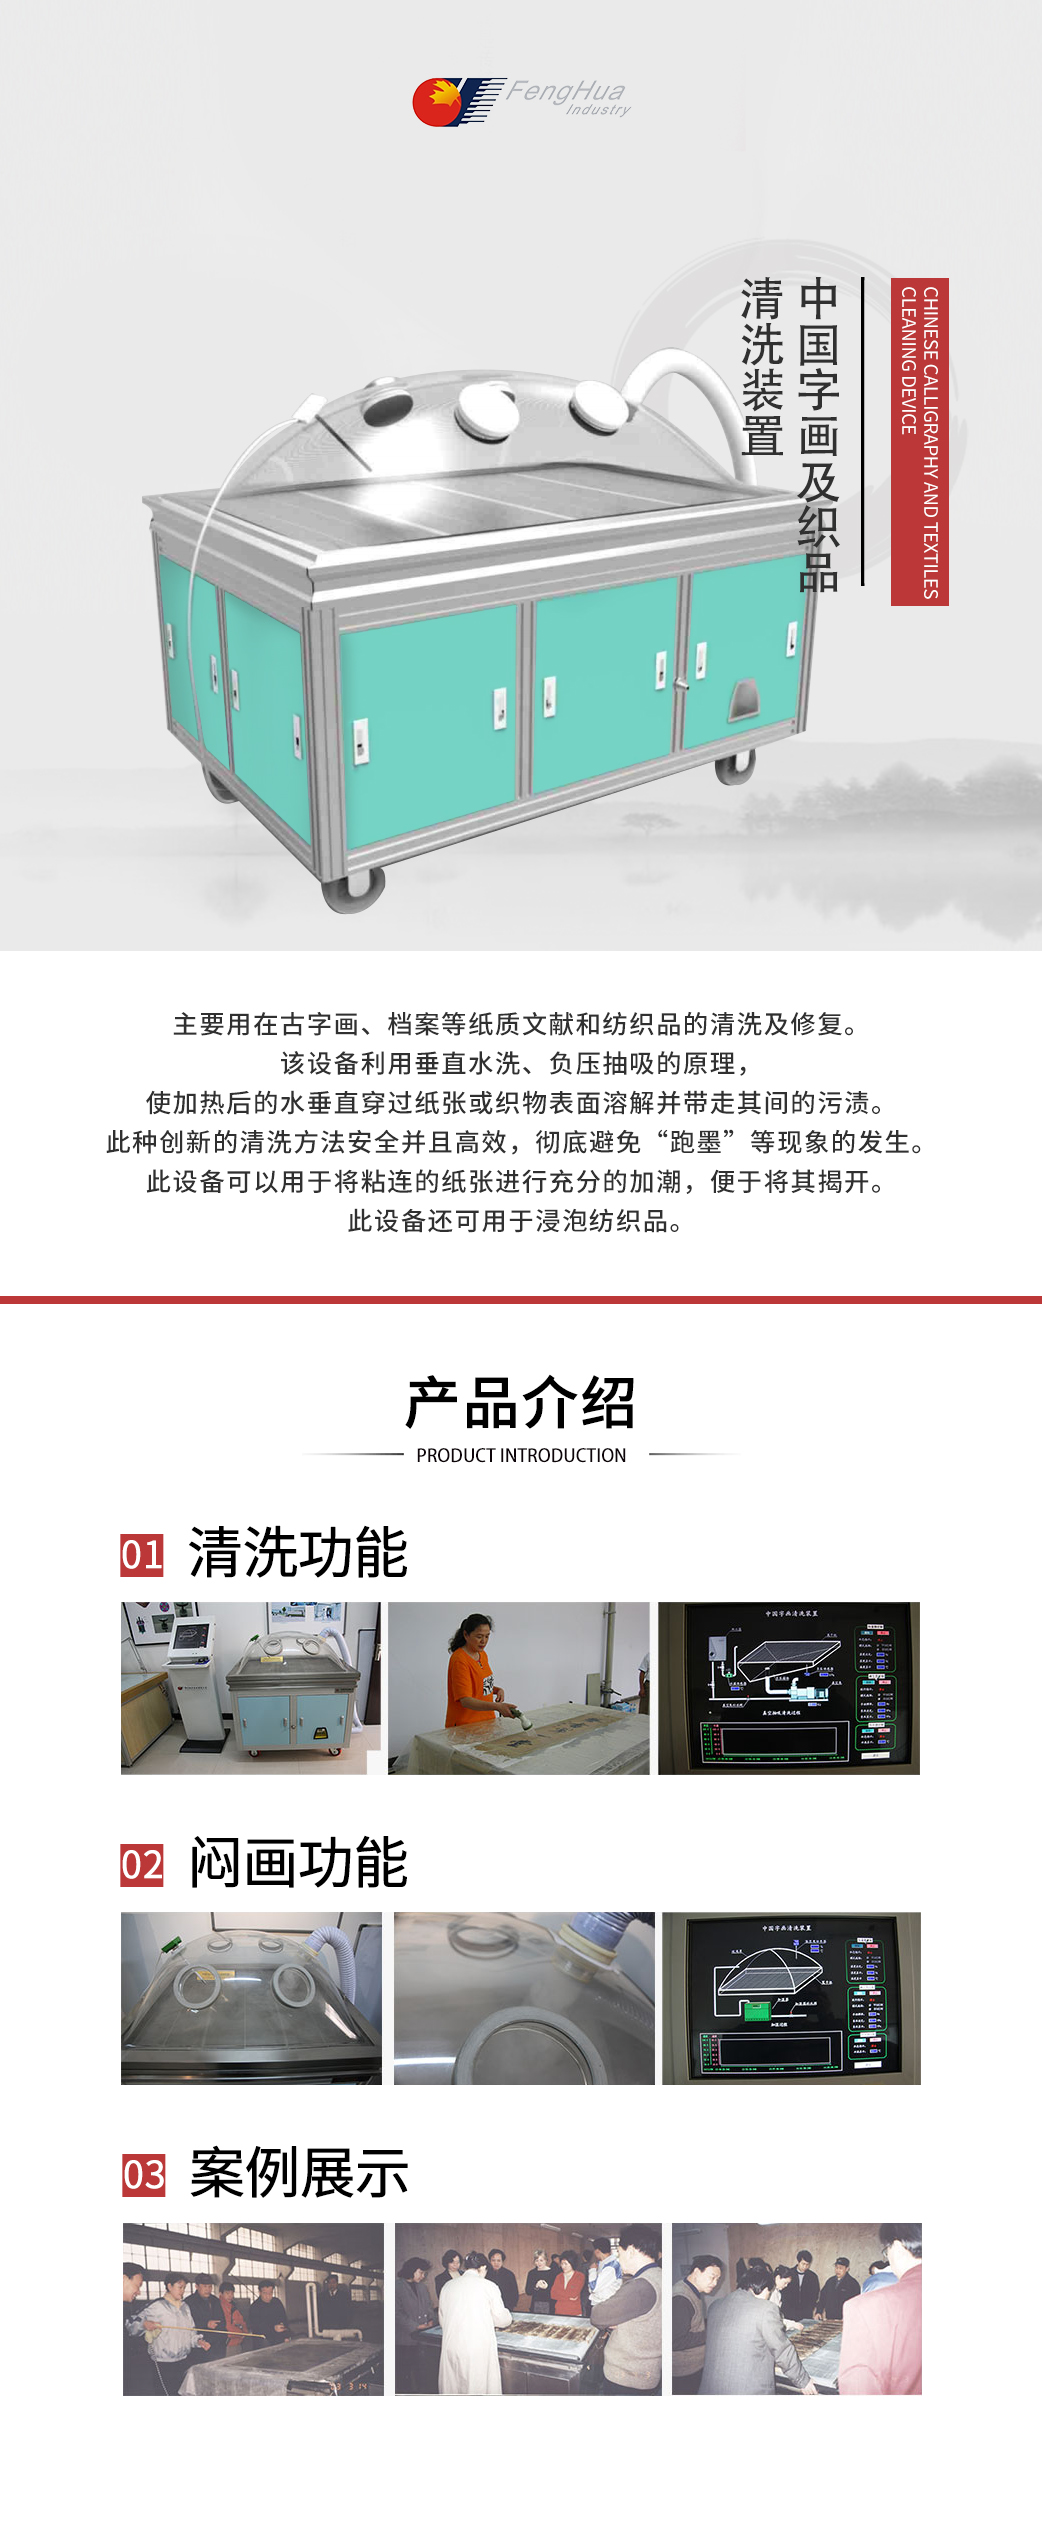 2-中国字画及纺织品清洗装置.jpg